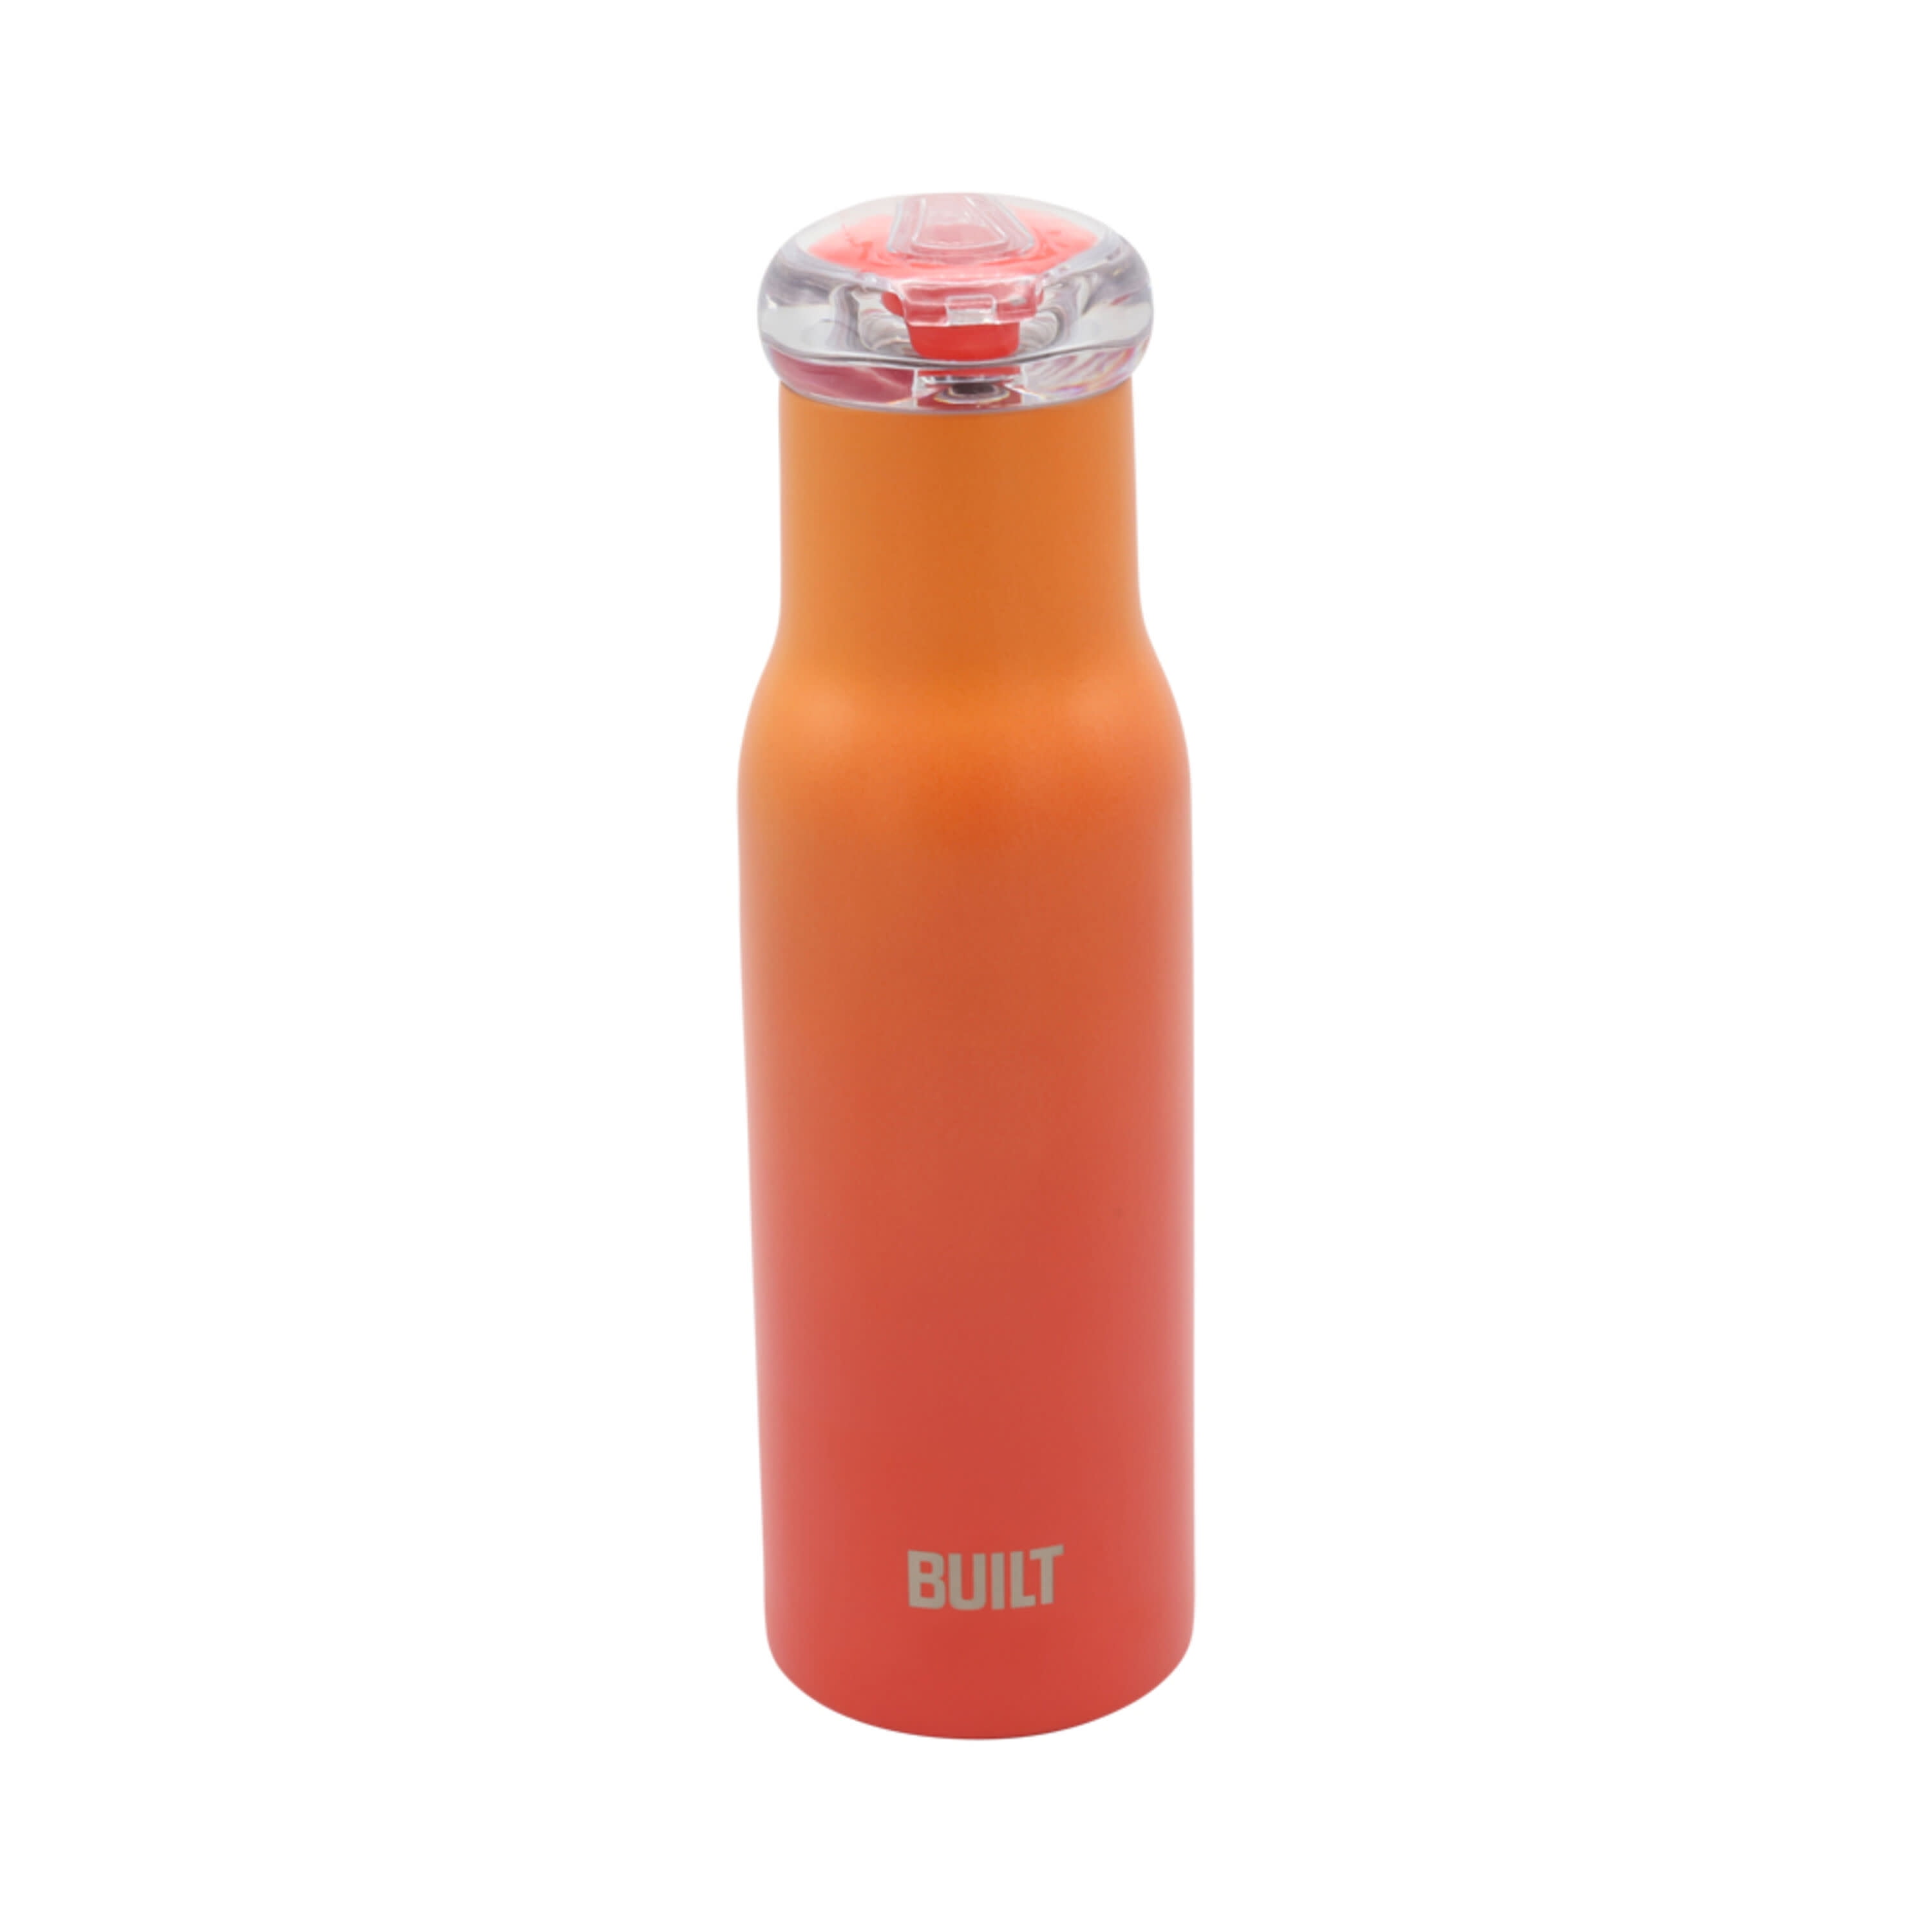 IWOM 18 oz Water Bottle By Boelter Brands